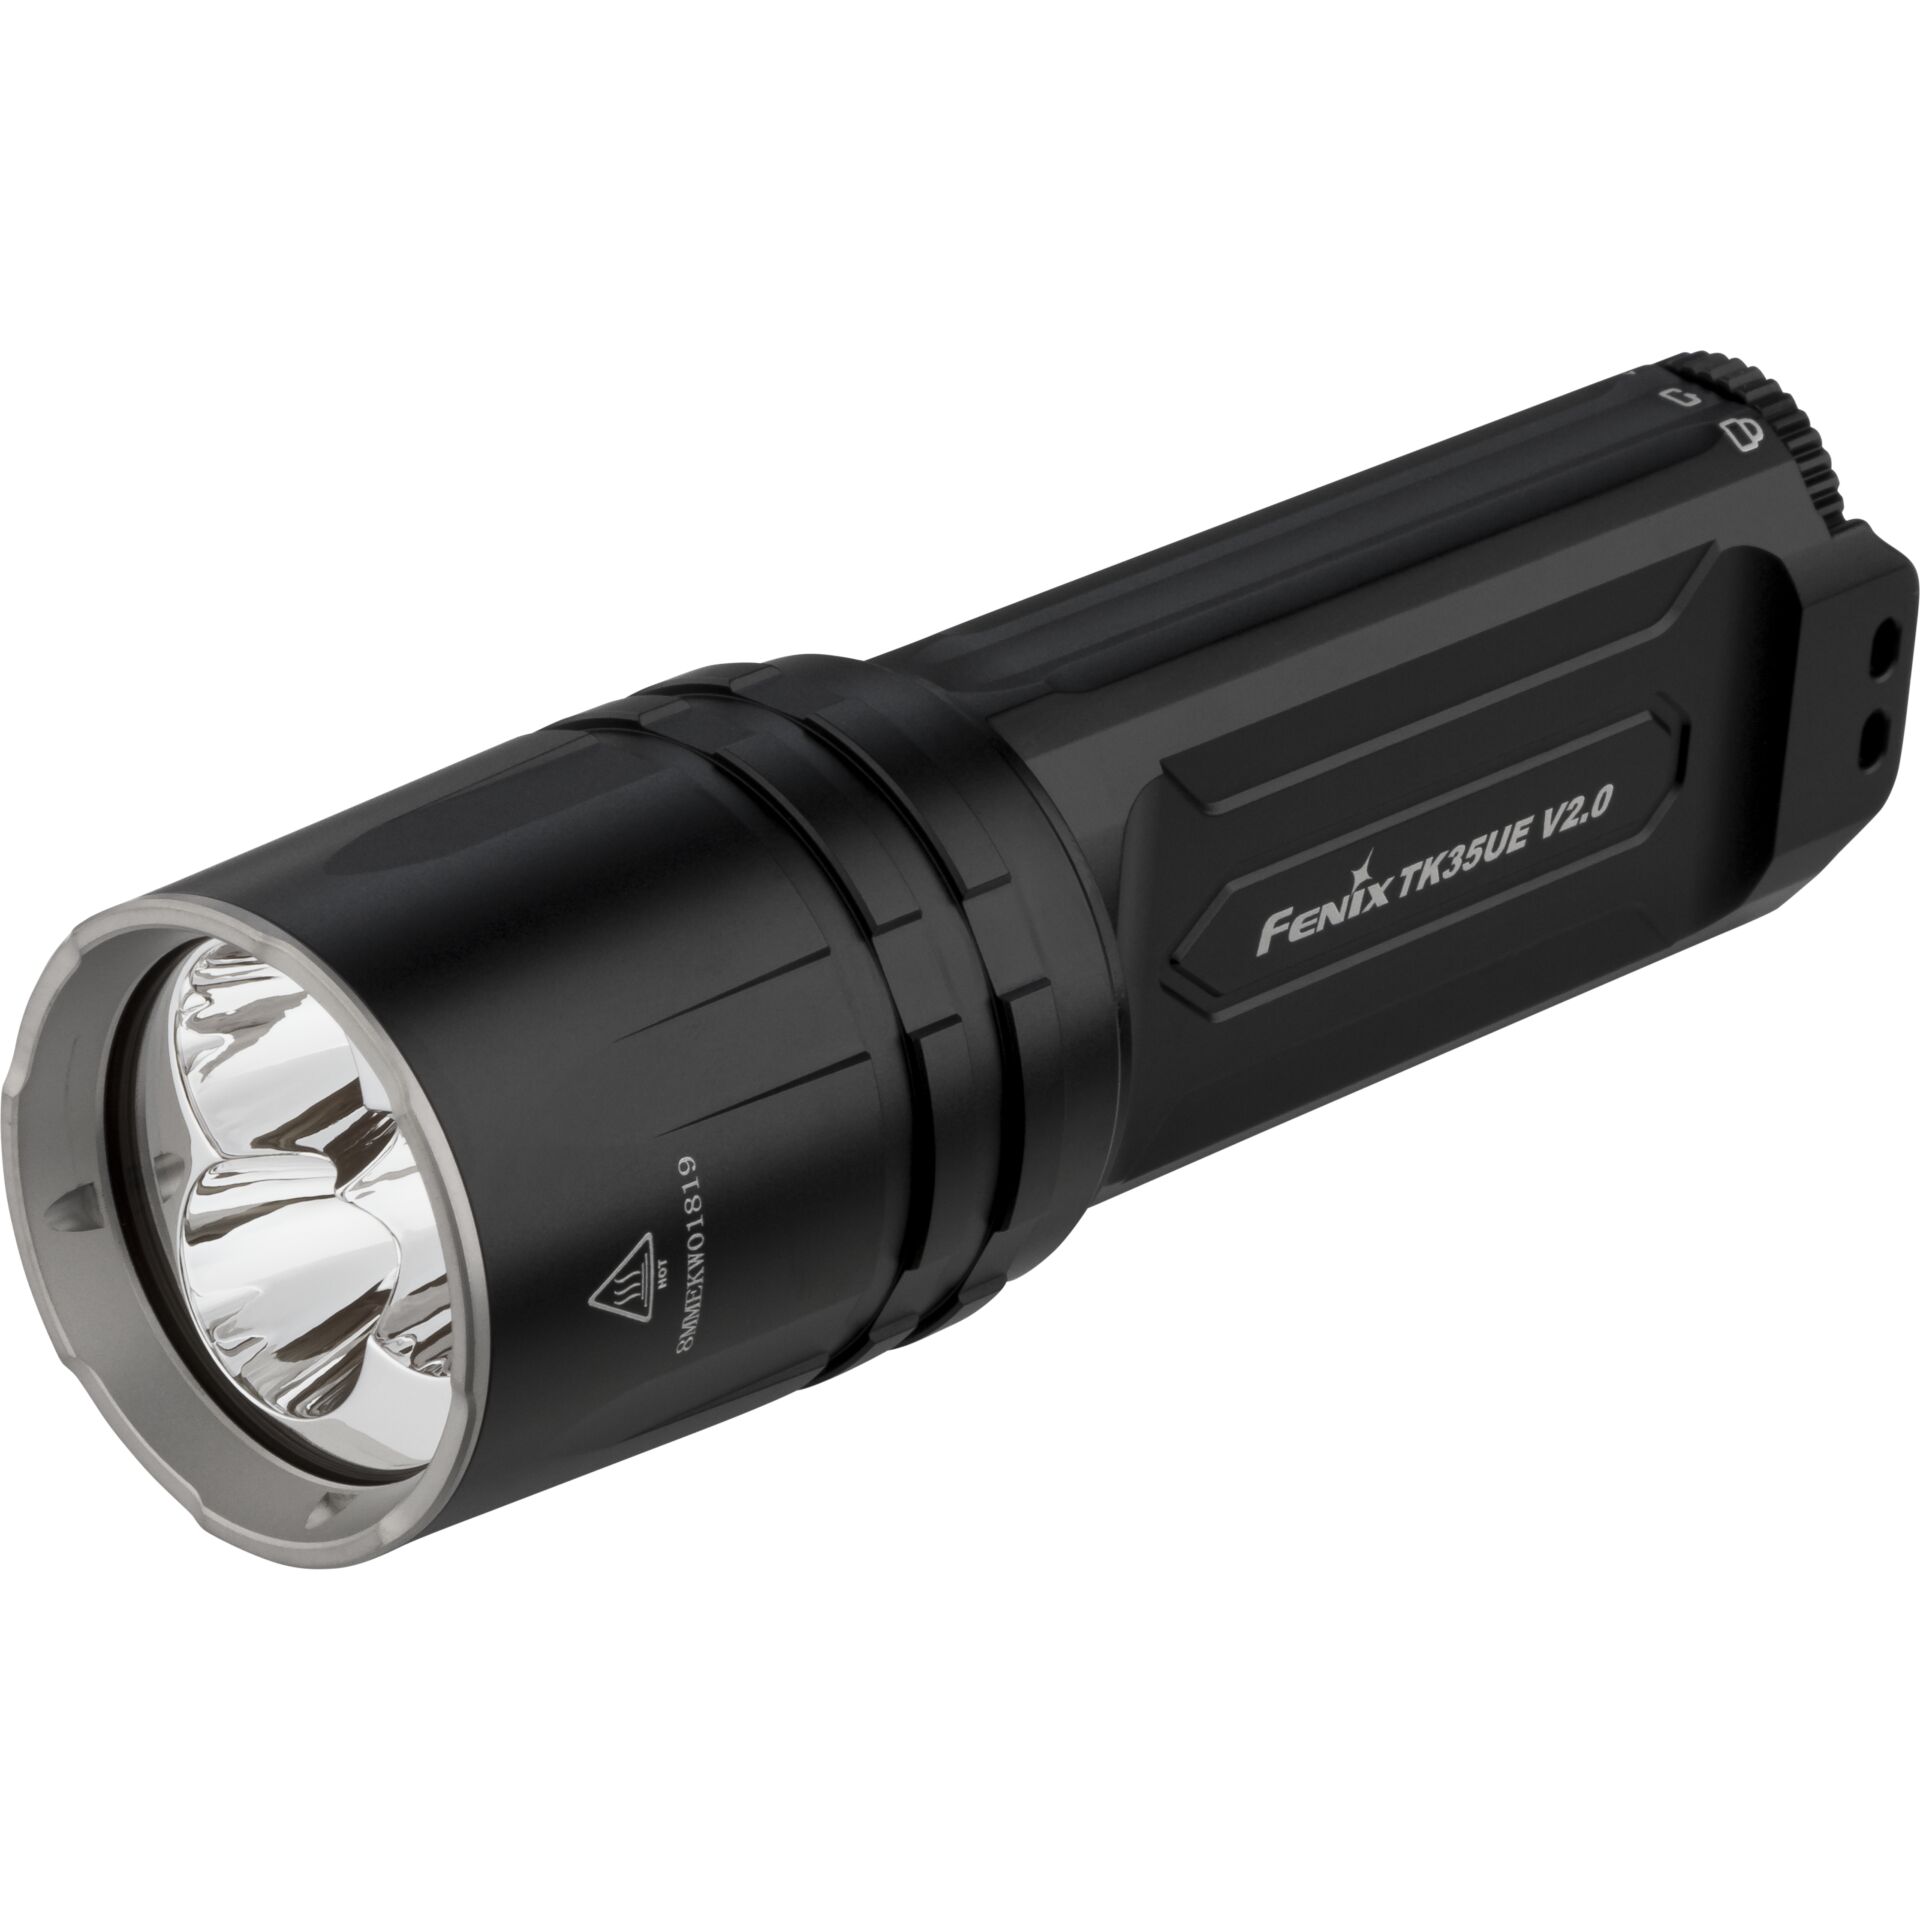 Fenix TK35UE V2.0 Schwarz Taschenlampe LED